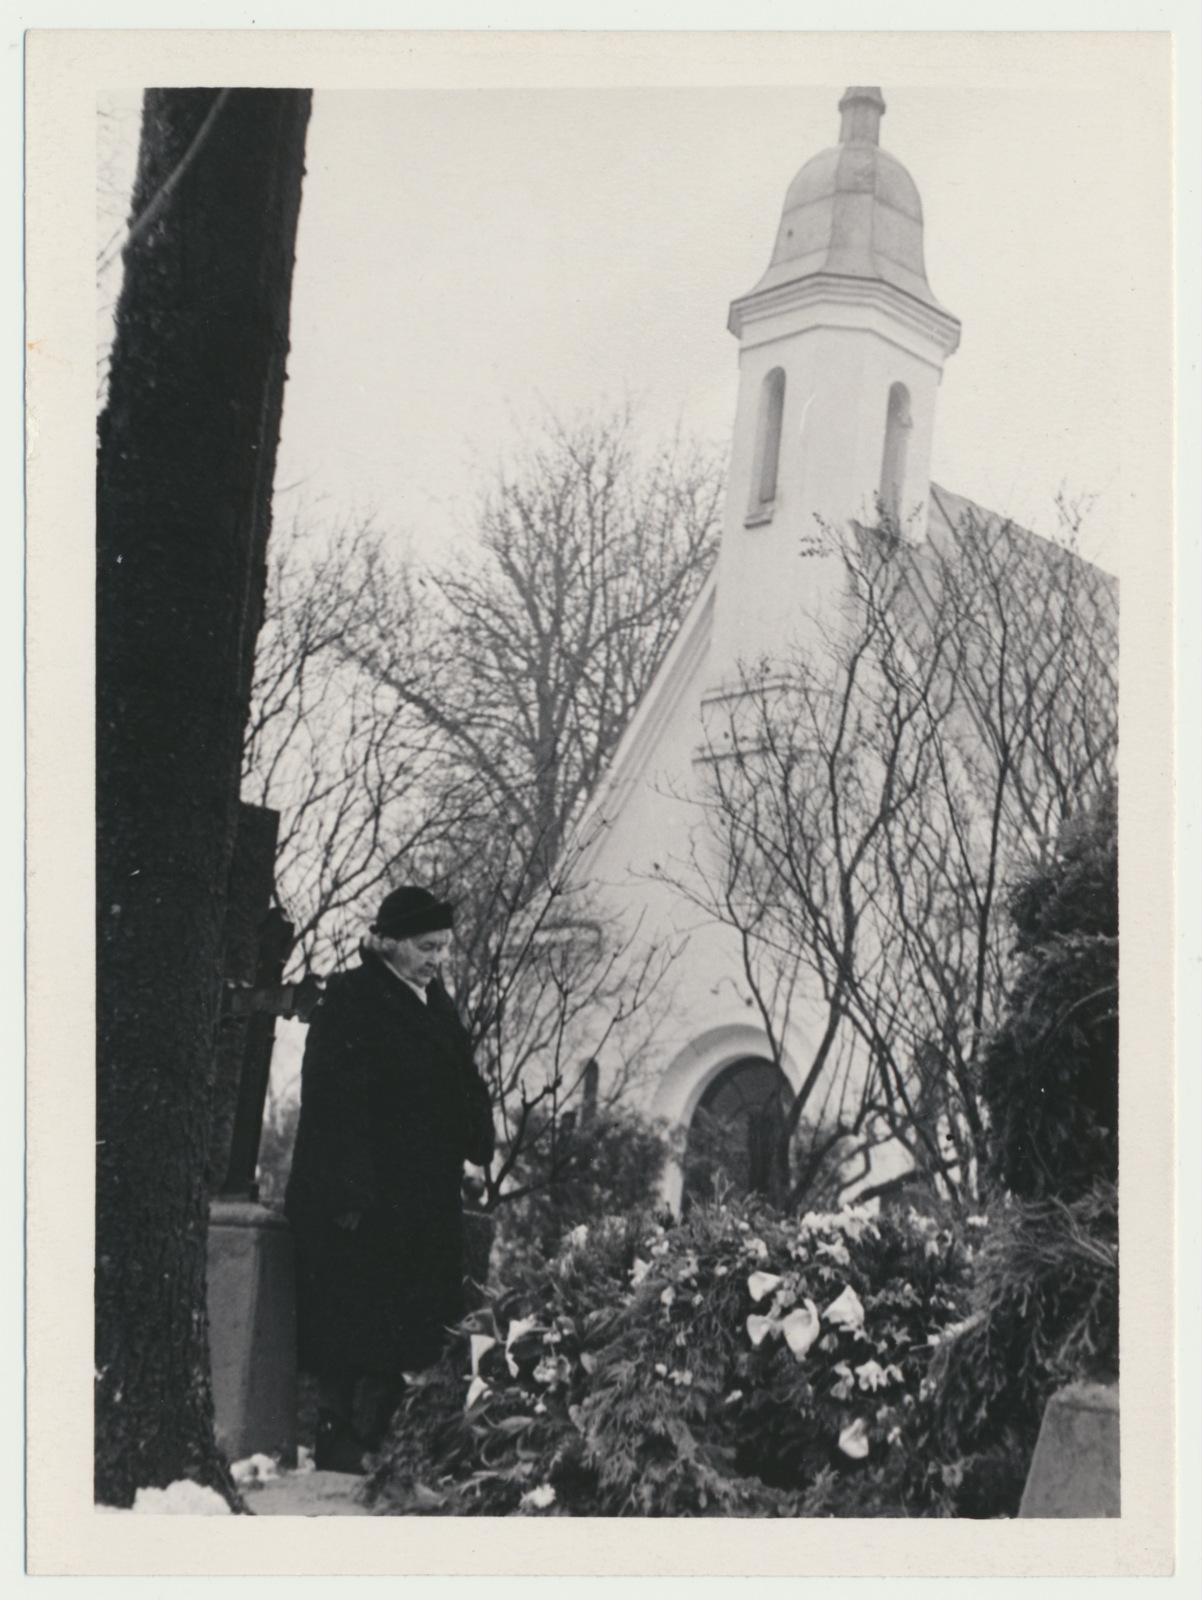 foto, Tartu, Raadi kalmistu, Juhan Simmi matused, kalmul abikaasa Alide, 1959